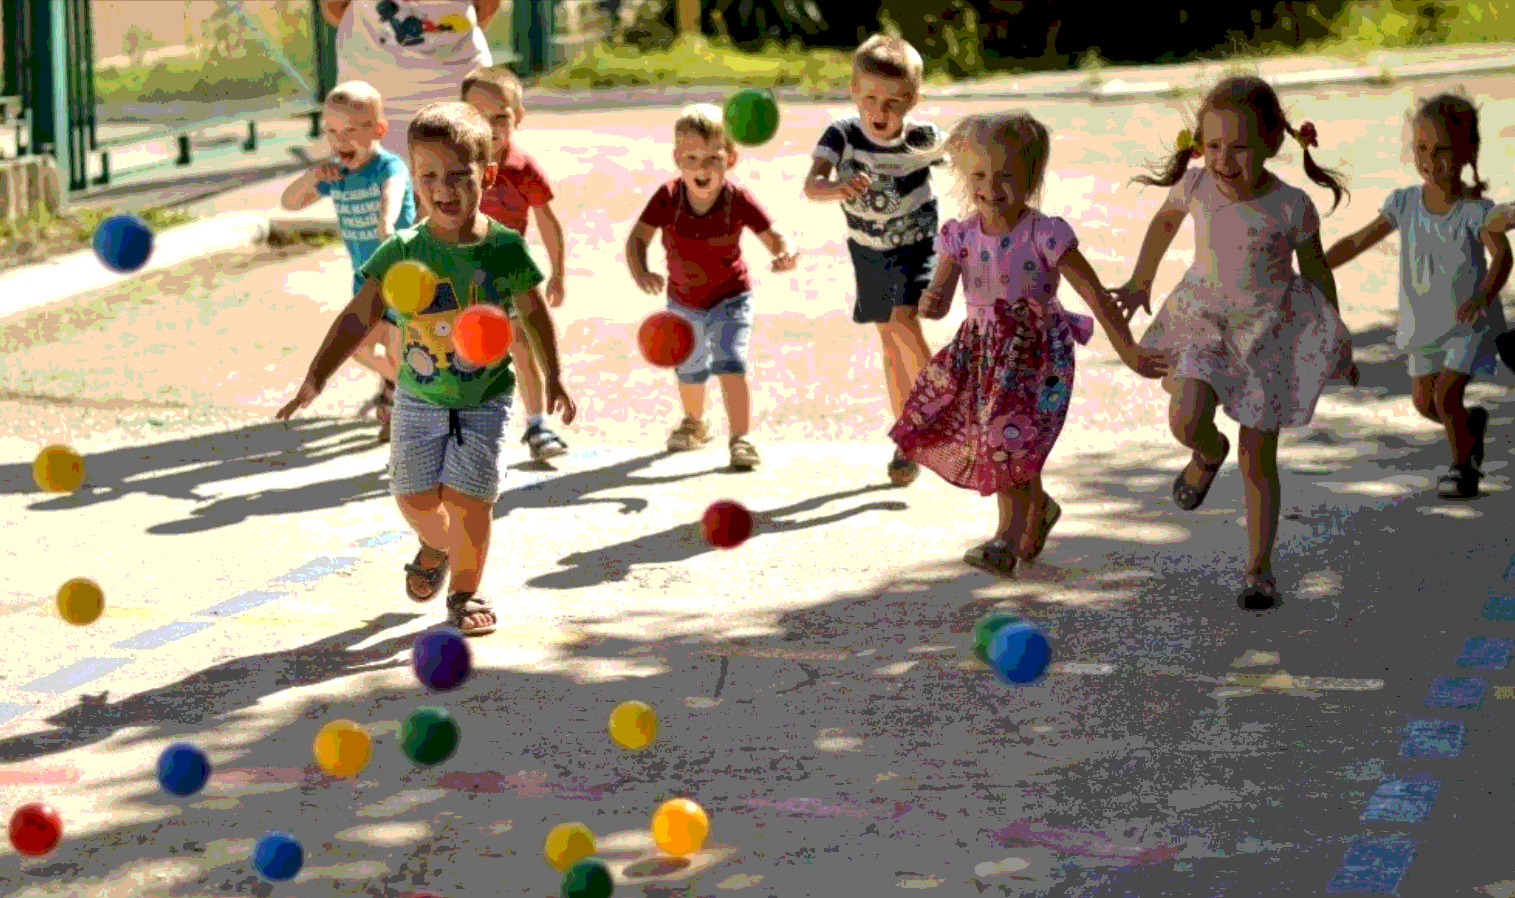 Игры в мяч задачи. Игры на улице летом. Игры для детей на улице летом. Развлечения в младшей группе. Летние развлечения для детей.